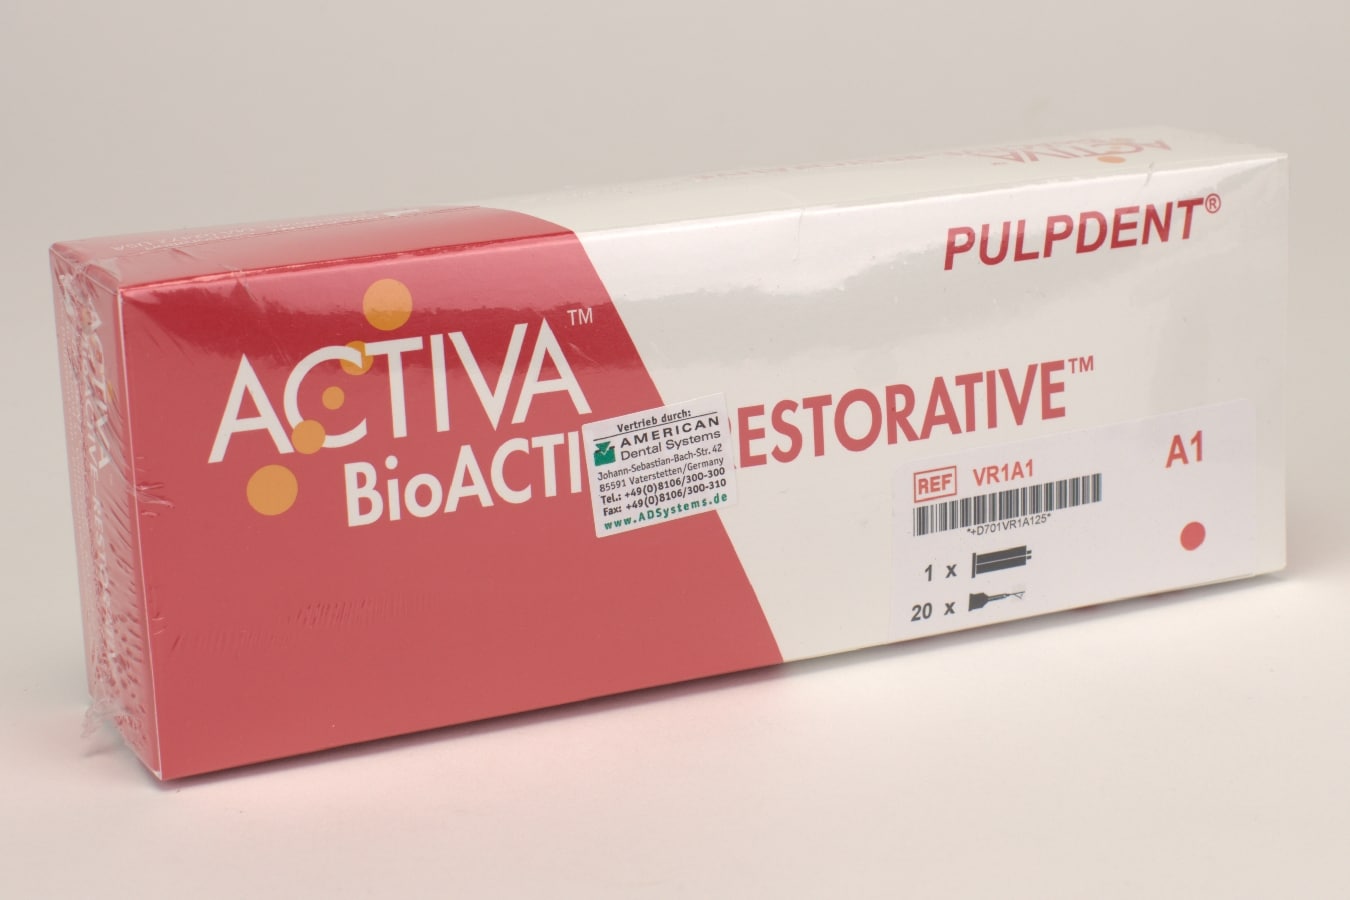 Activia BioActive Restorative A1 Refill 5ml